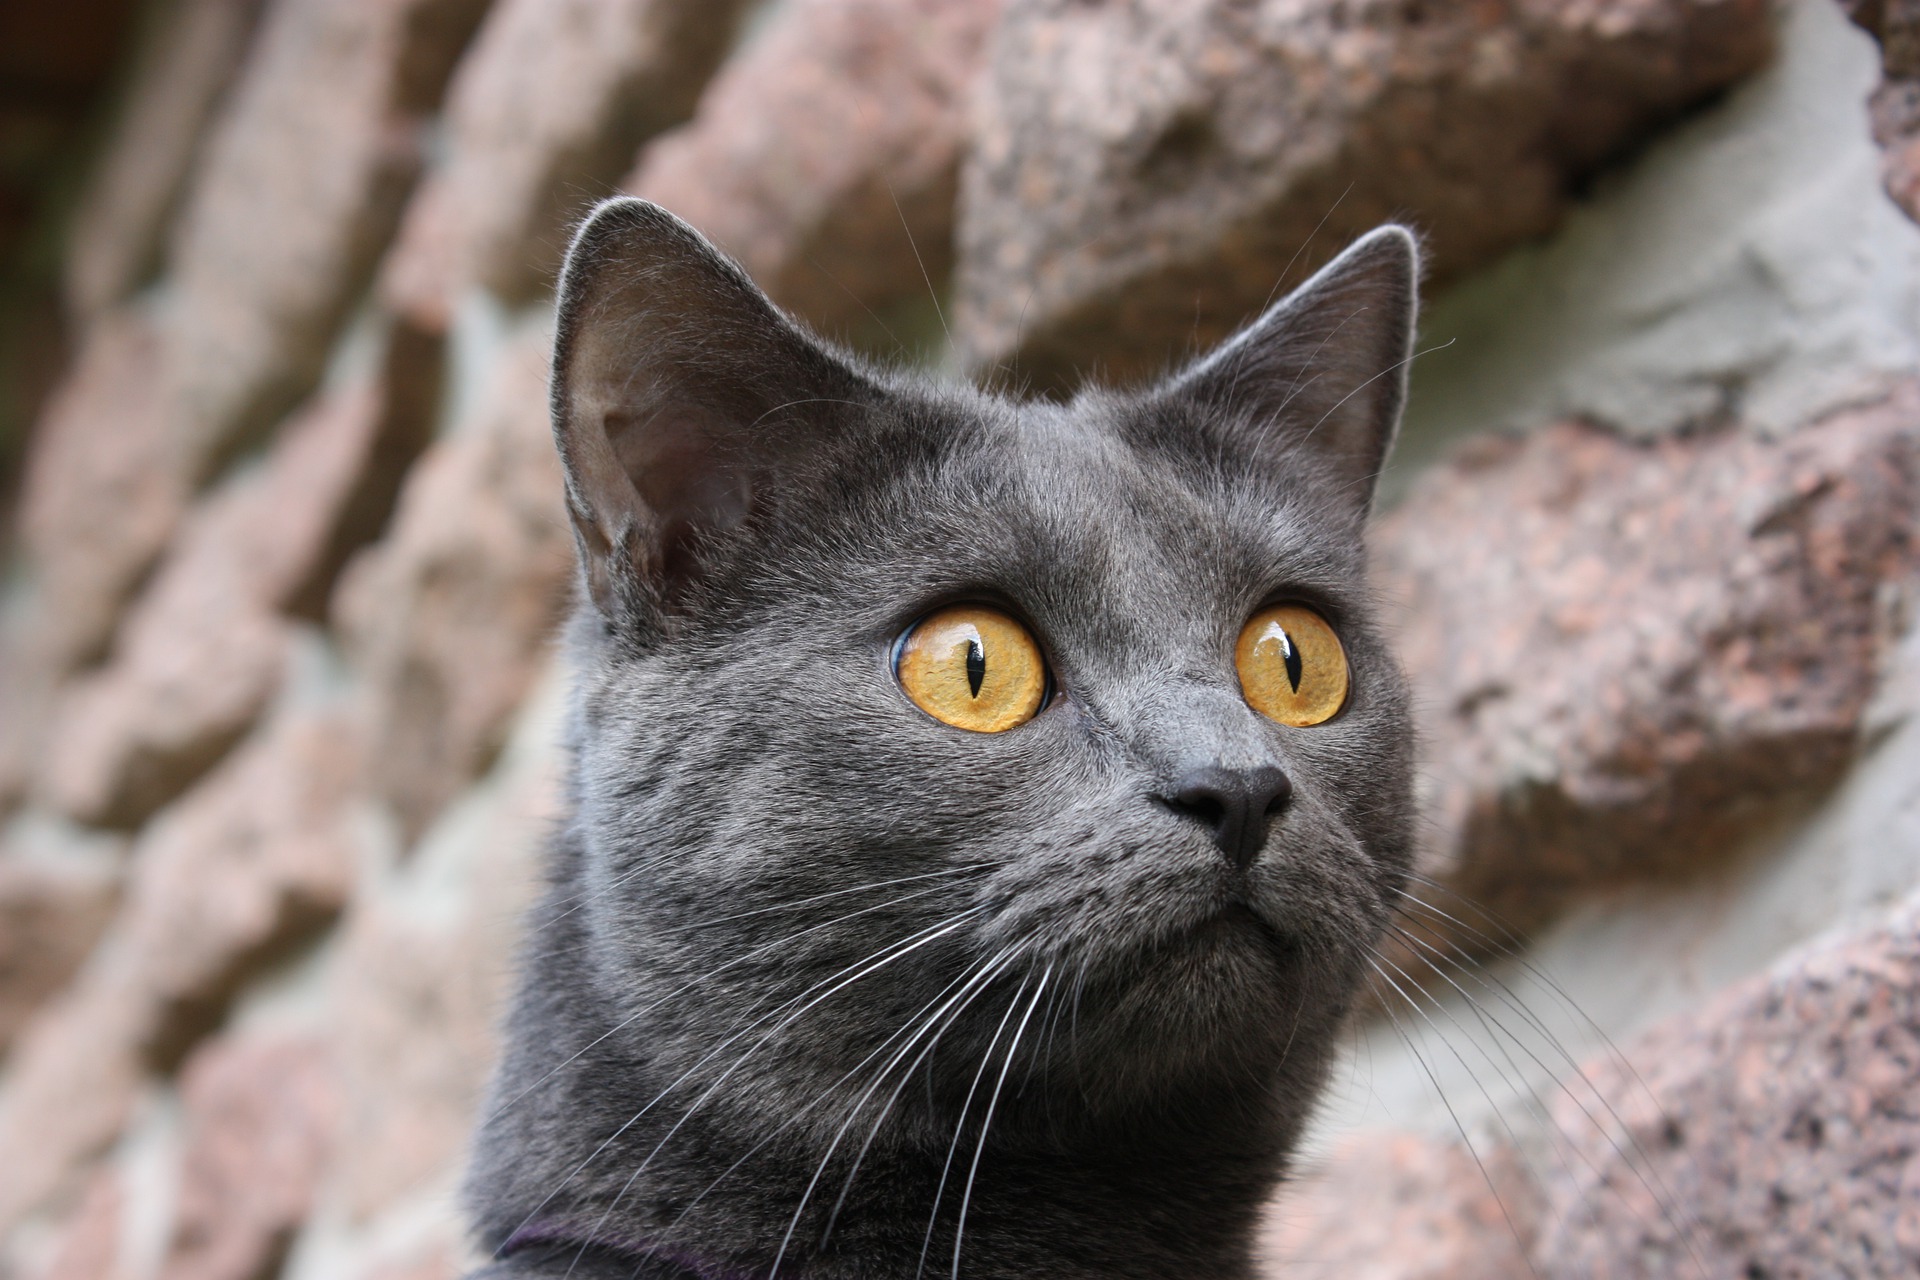 Kot chartreux często są mylone z kotami brytyjskimi. Występują one jednak tylko w niebieskim odcieniu futra, nos mają prosty, a ich głowa wpisuje się w trapez, nie okrąg jak u brytyjskich.